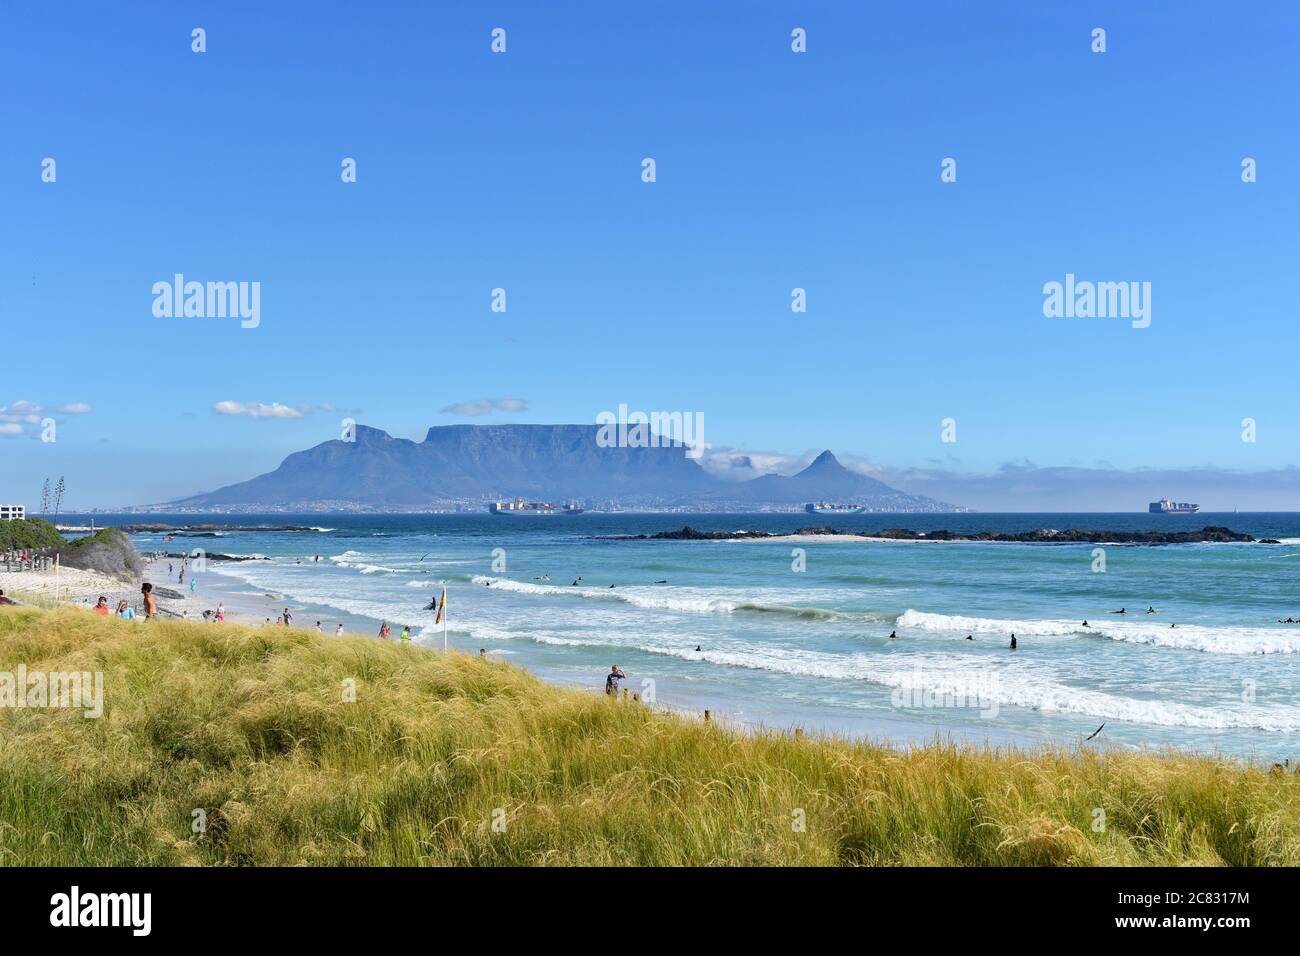 Table Mountain, Devils Peak y Lions Head vistos desde la playa de Bloubergstrand desde el otro lado de Table Bay. Se puede ver a la gente en la playa y en el agua. Foto de stock